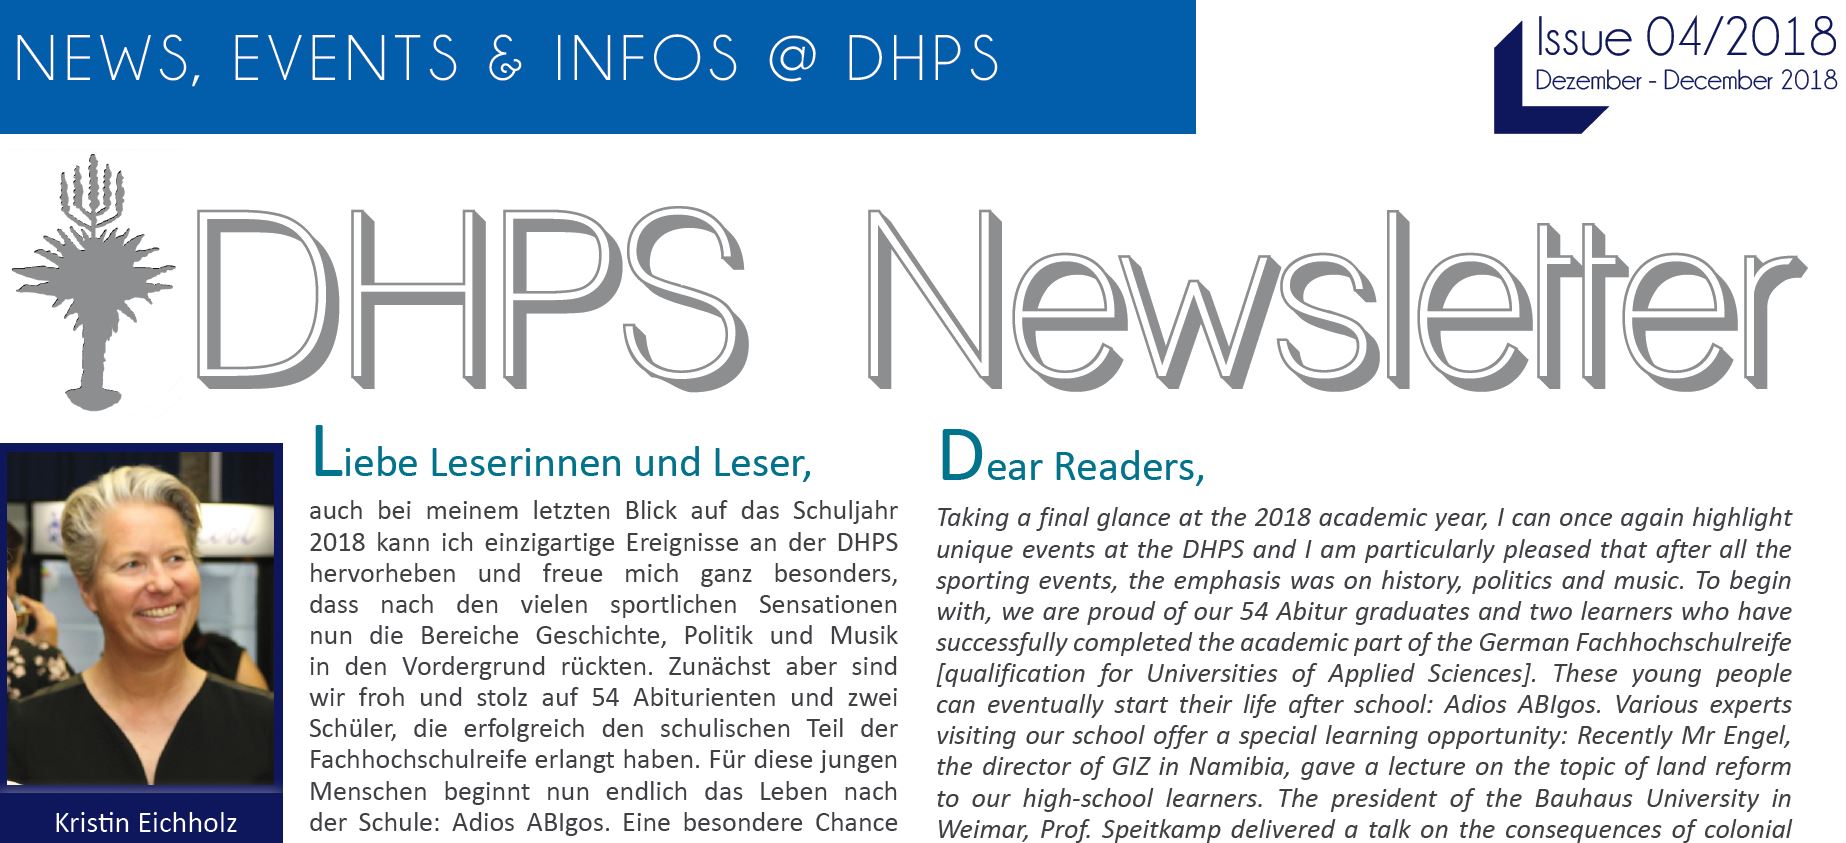 New DHPS Newsletter: December 2018